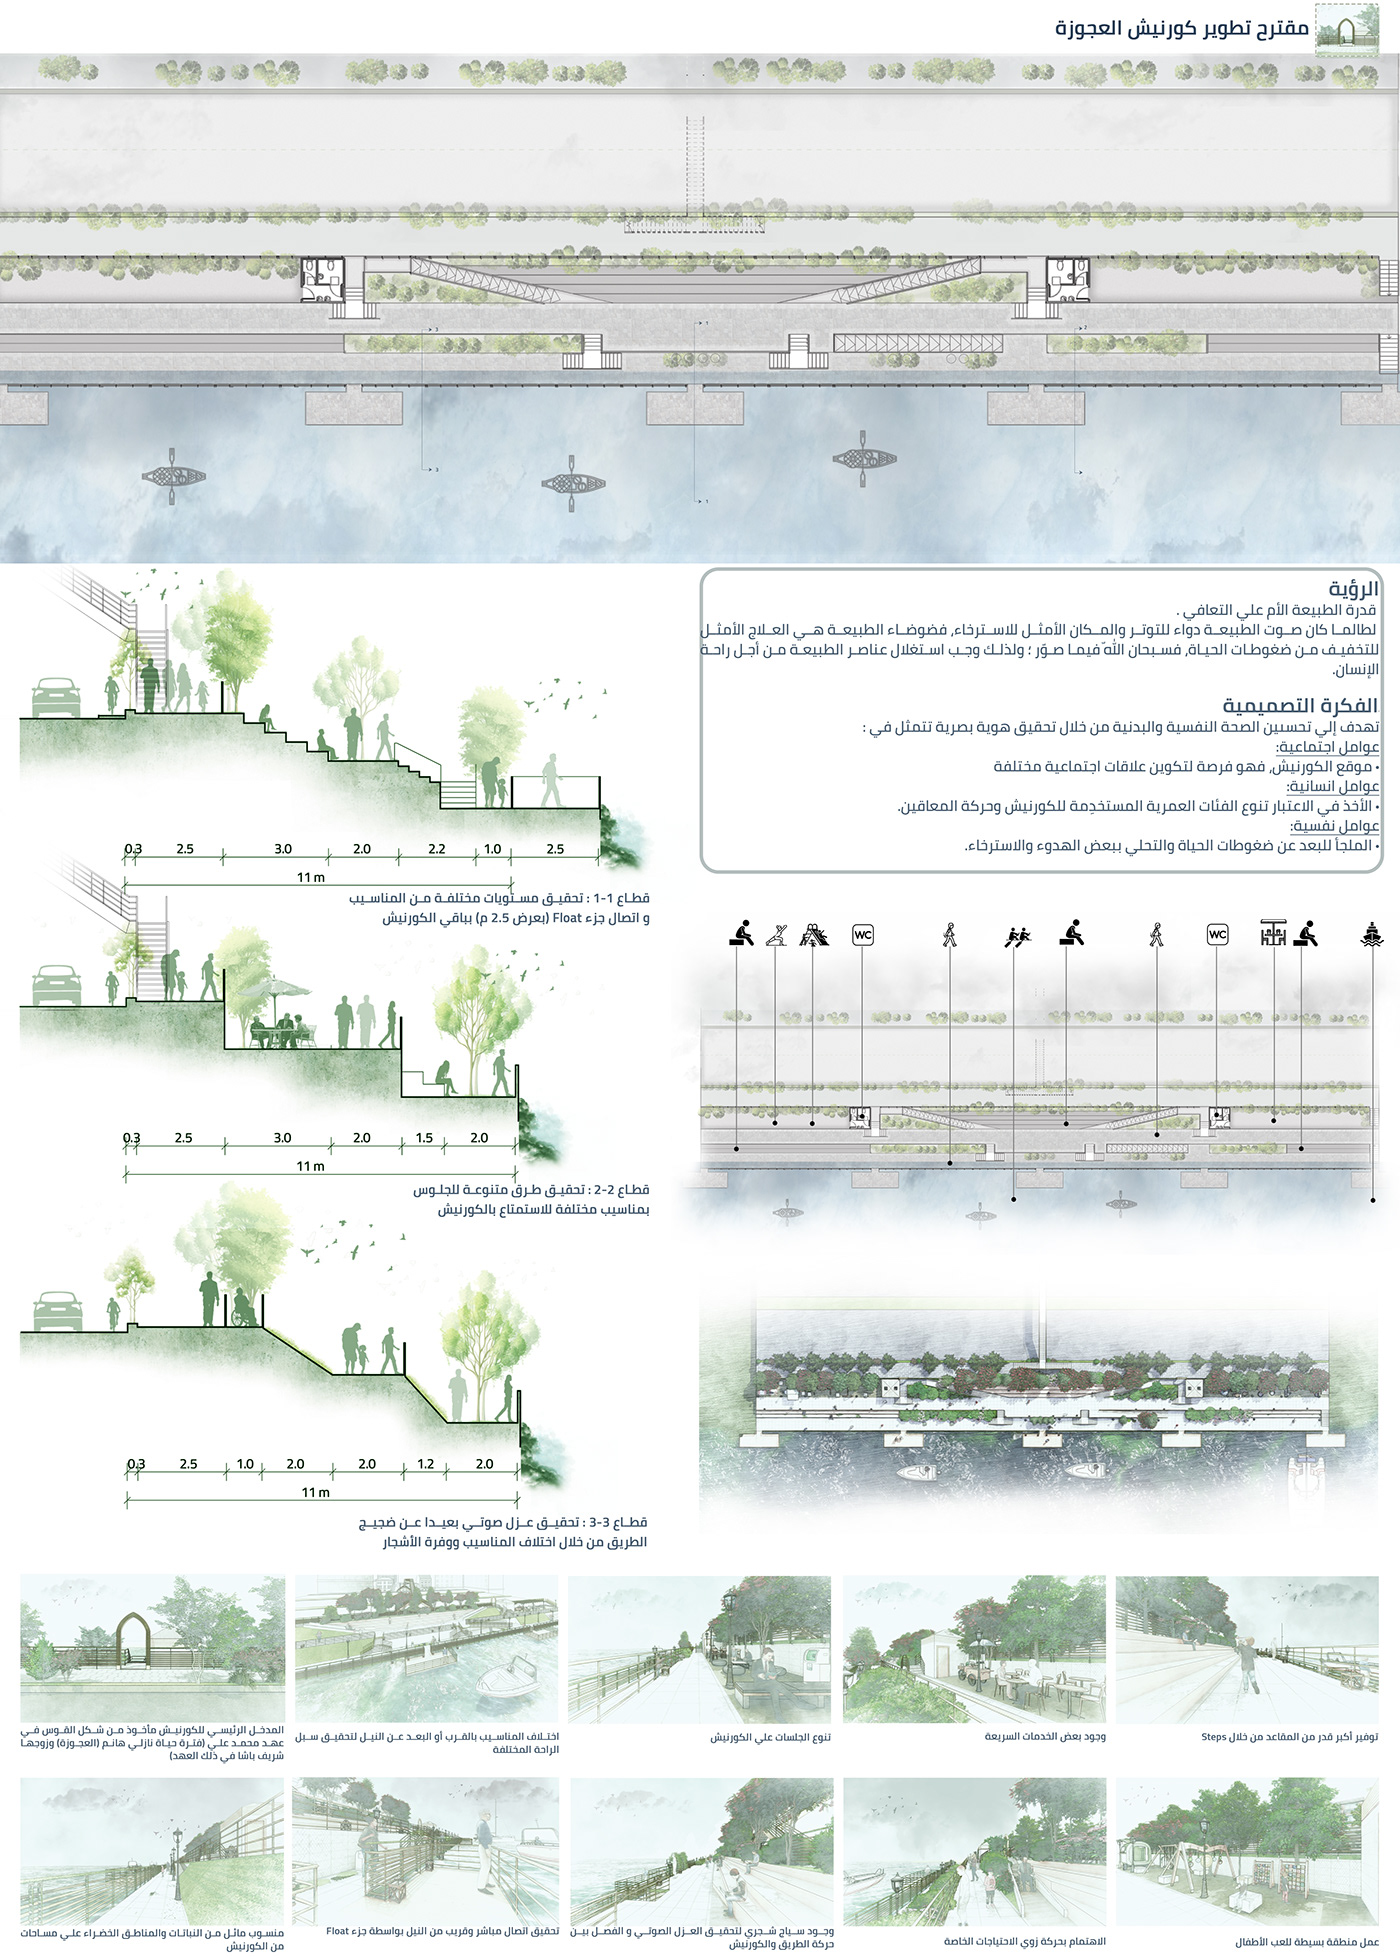 Urban architecture Render visualization 3D development Landscape Nature concept Photography 